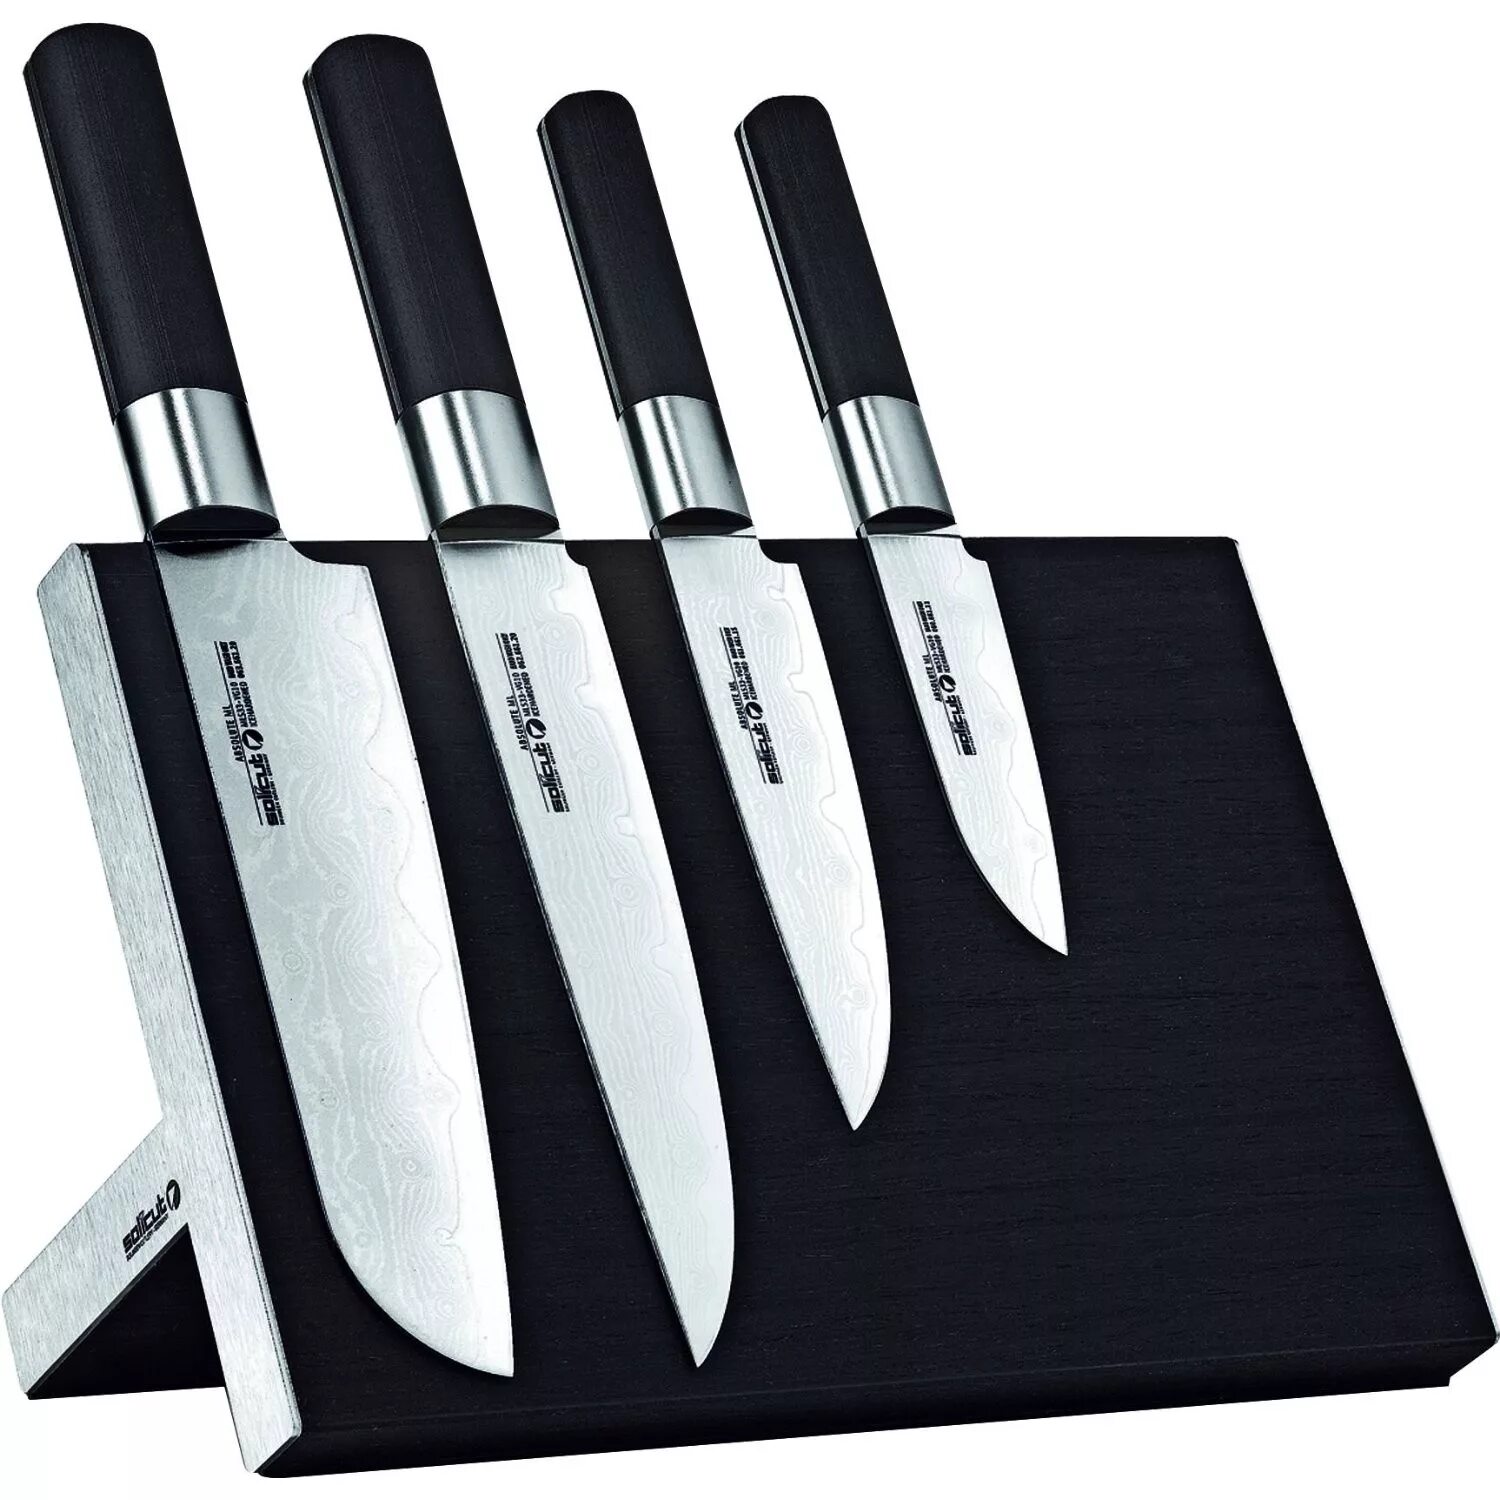 Китайские кухонные ножи. Кухонный нож. Набор ножей для кухни. Дизайнерские кухонные ножи. Нажми куханые.